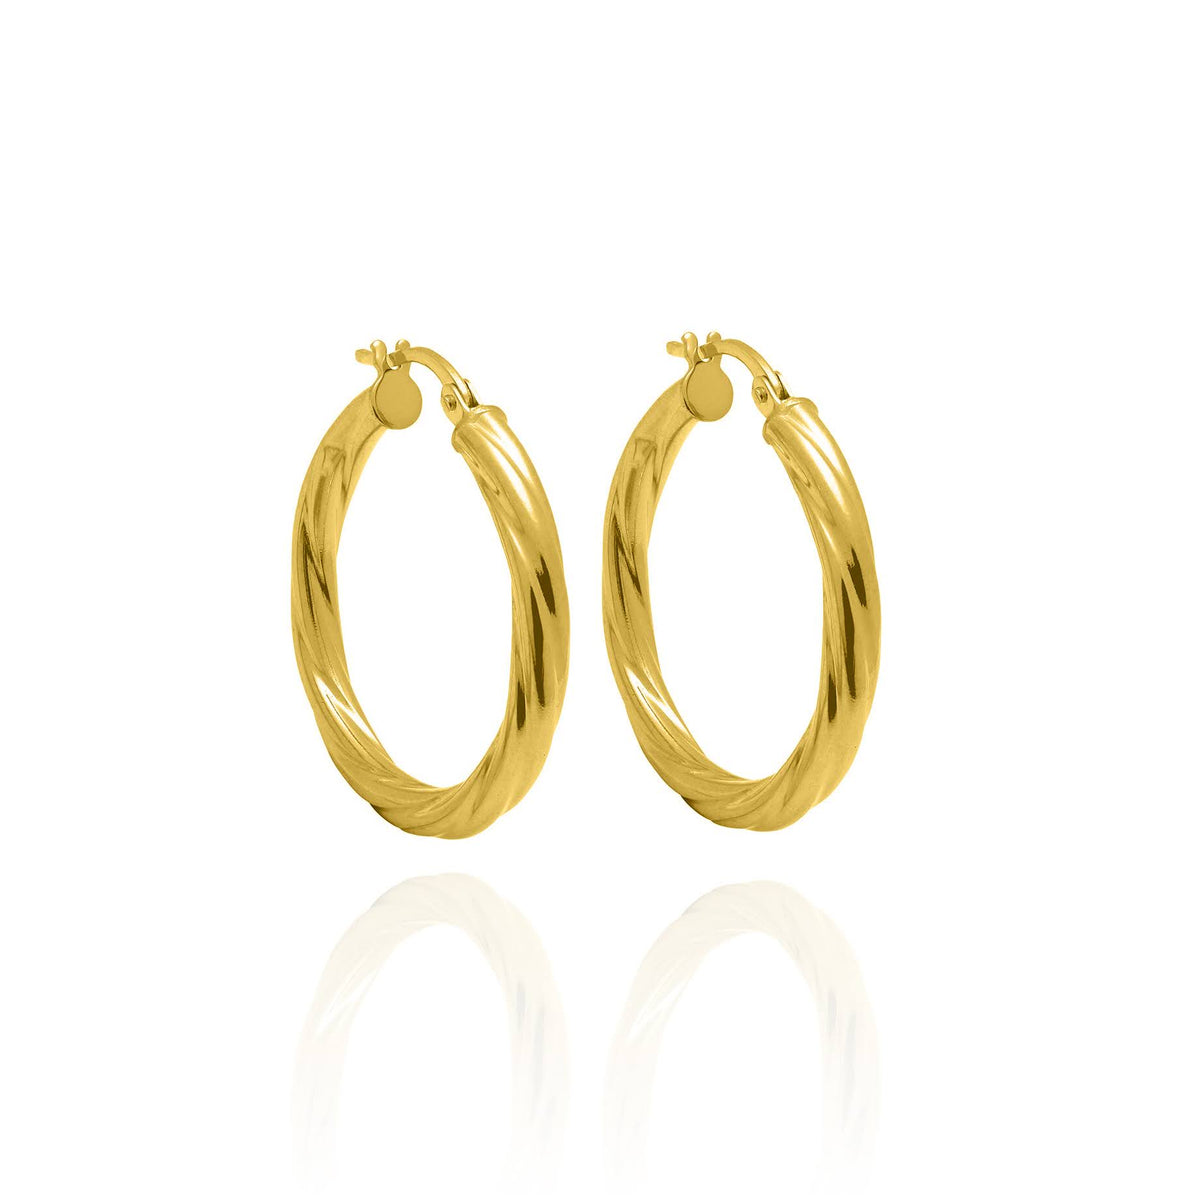 3mm Solid Gold Textured Hoop Earrings